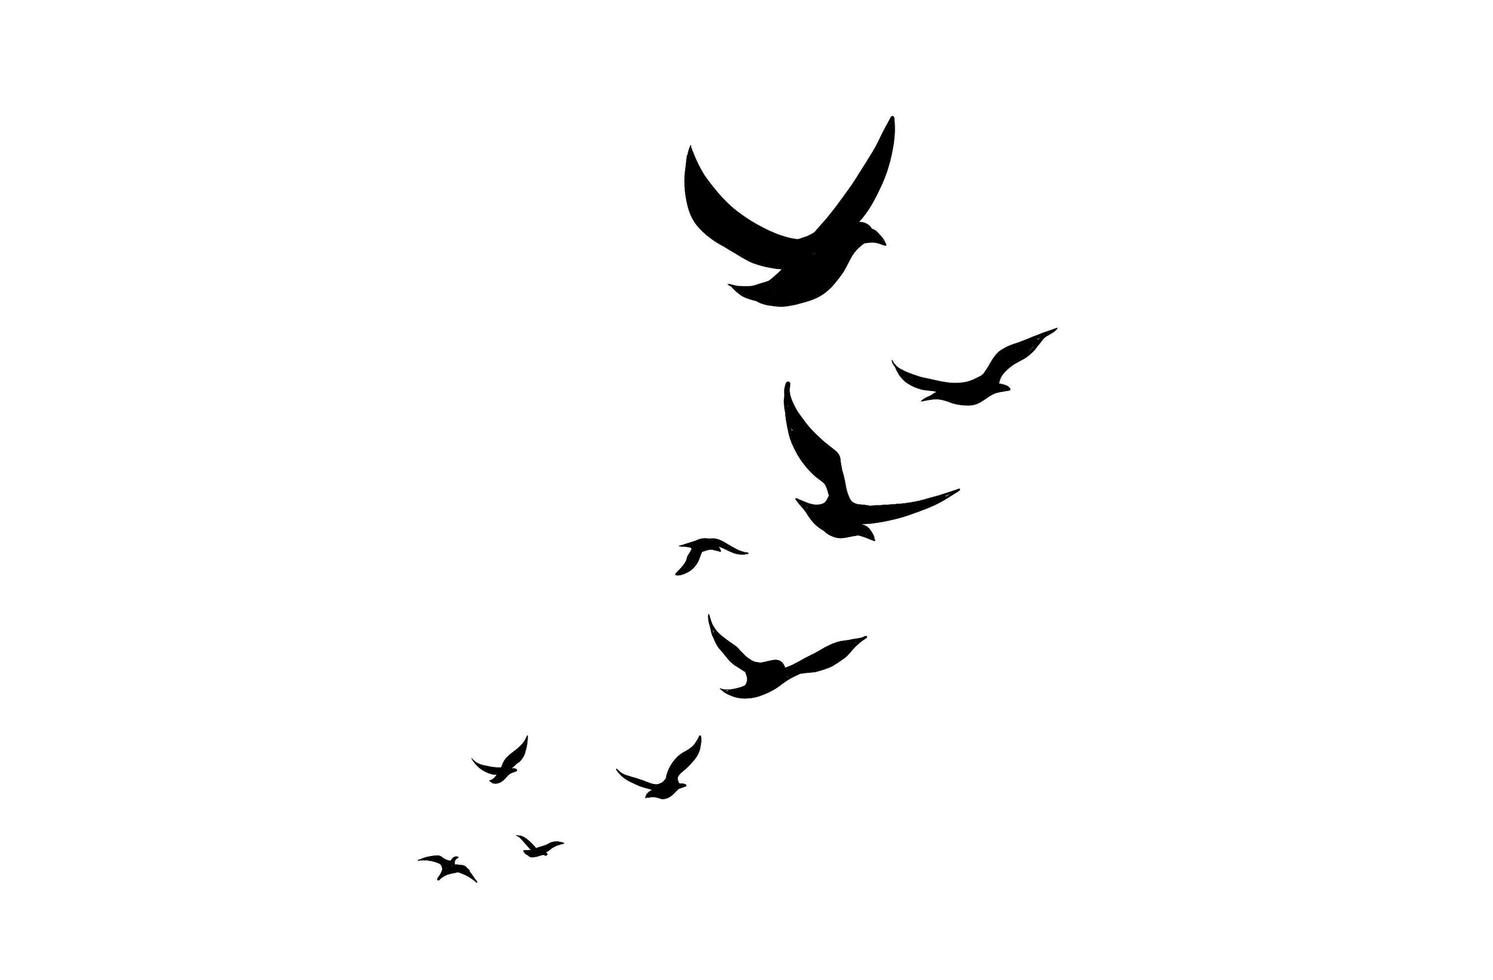 a ilustração de pássaros voando isolada em um fundo branco. um bando de animais voadores em um design simples para um elemento decorativo e tatuagem. foto